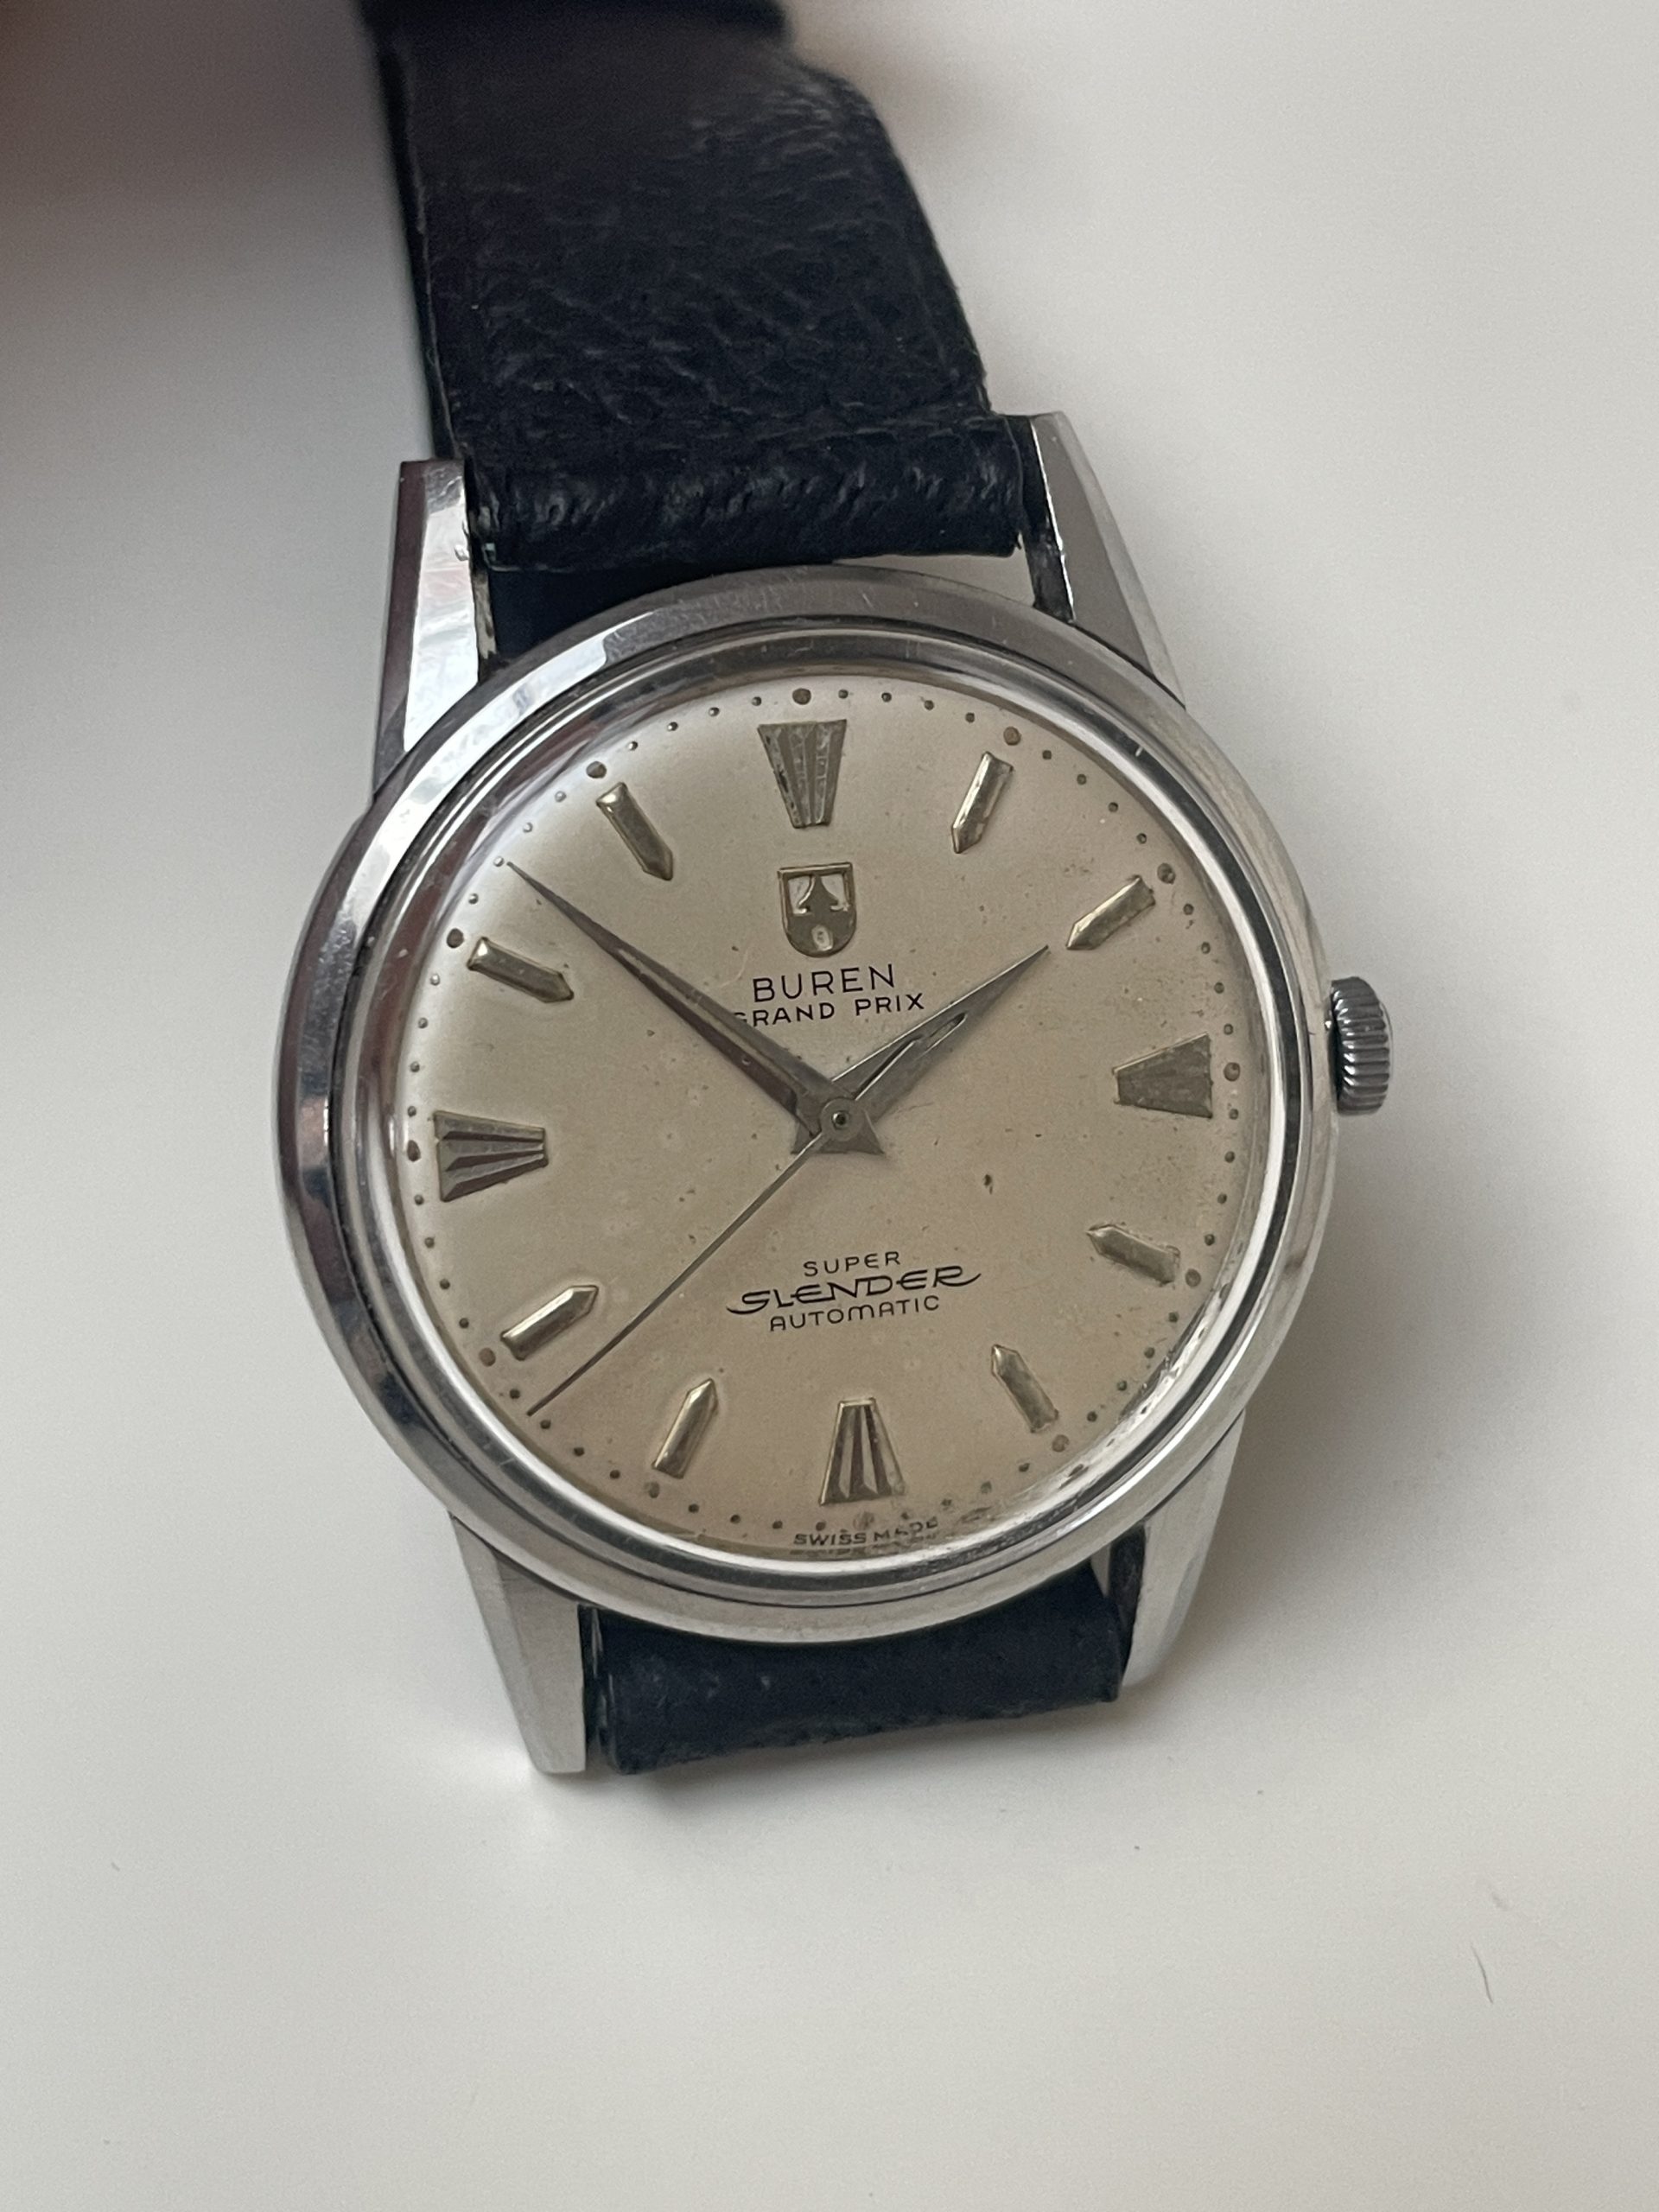 SOLD 1951 Buren Grand Prix 9k Gold - Birth Year Watches